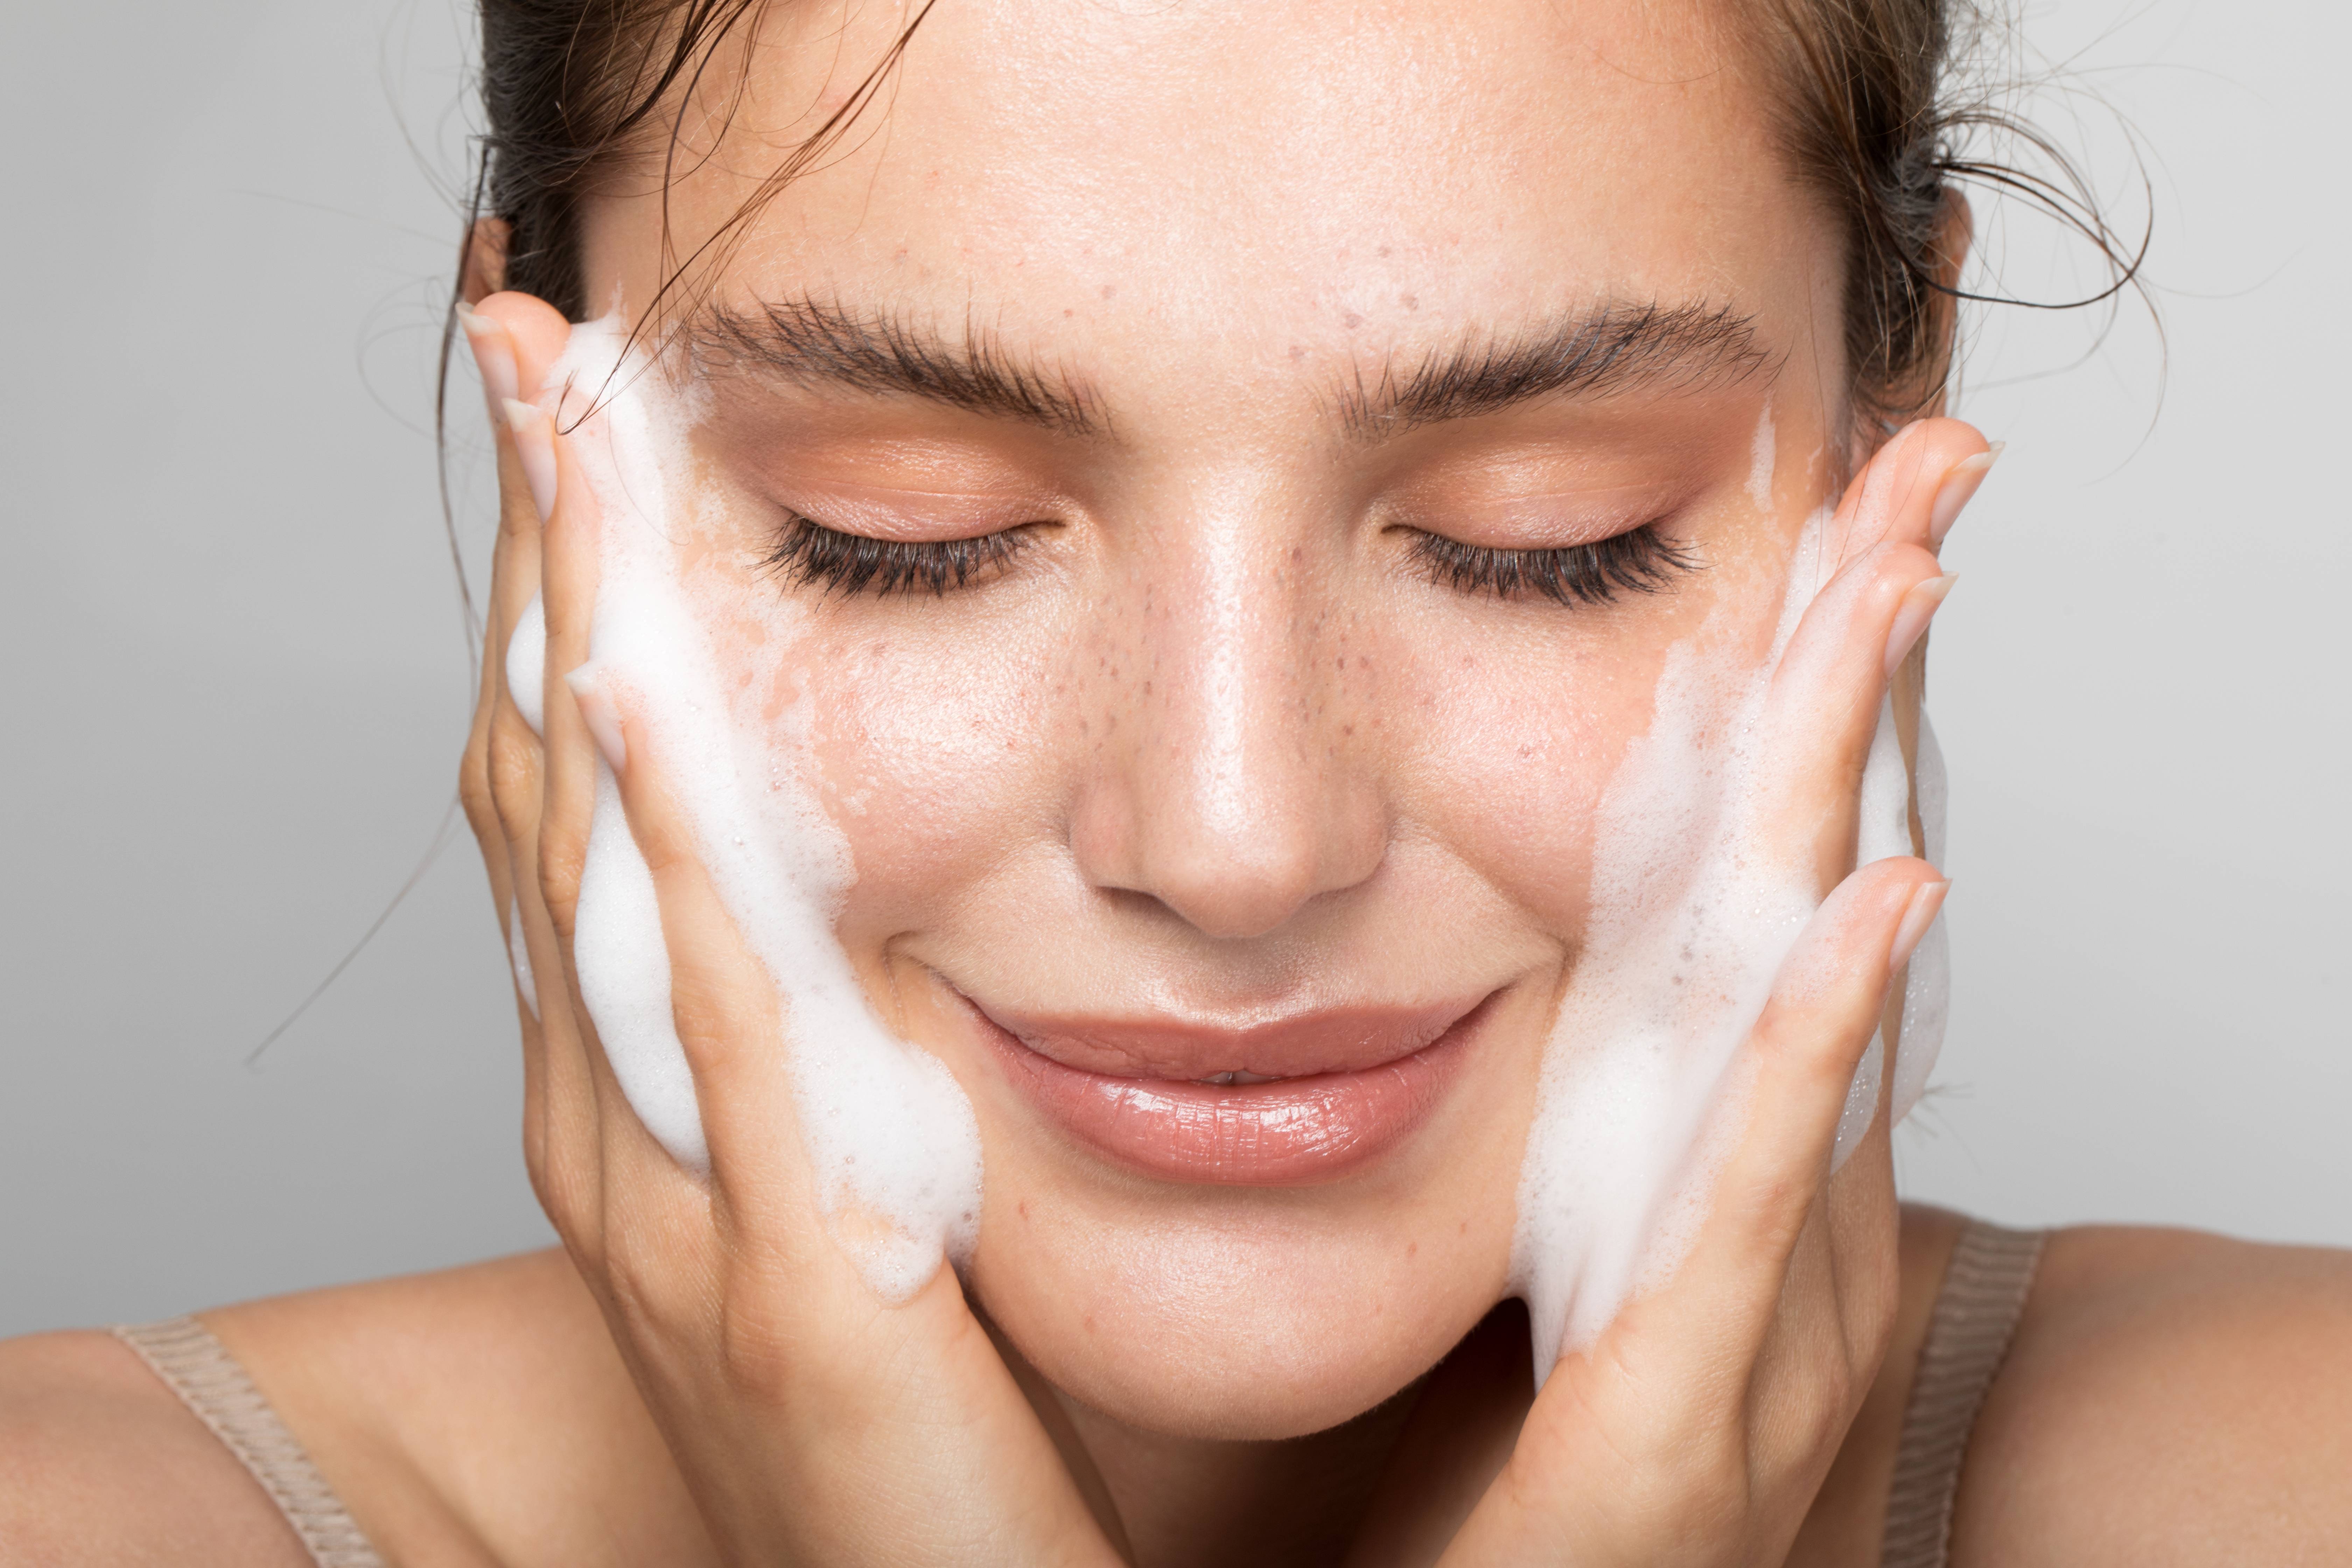 Причины шелушения кожи на лице у женщин: обзор 3 средств против сухости